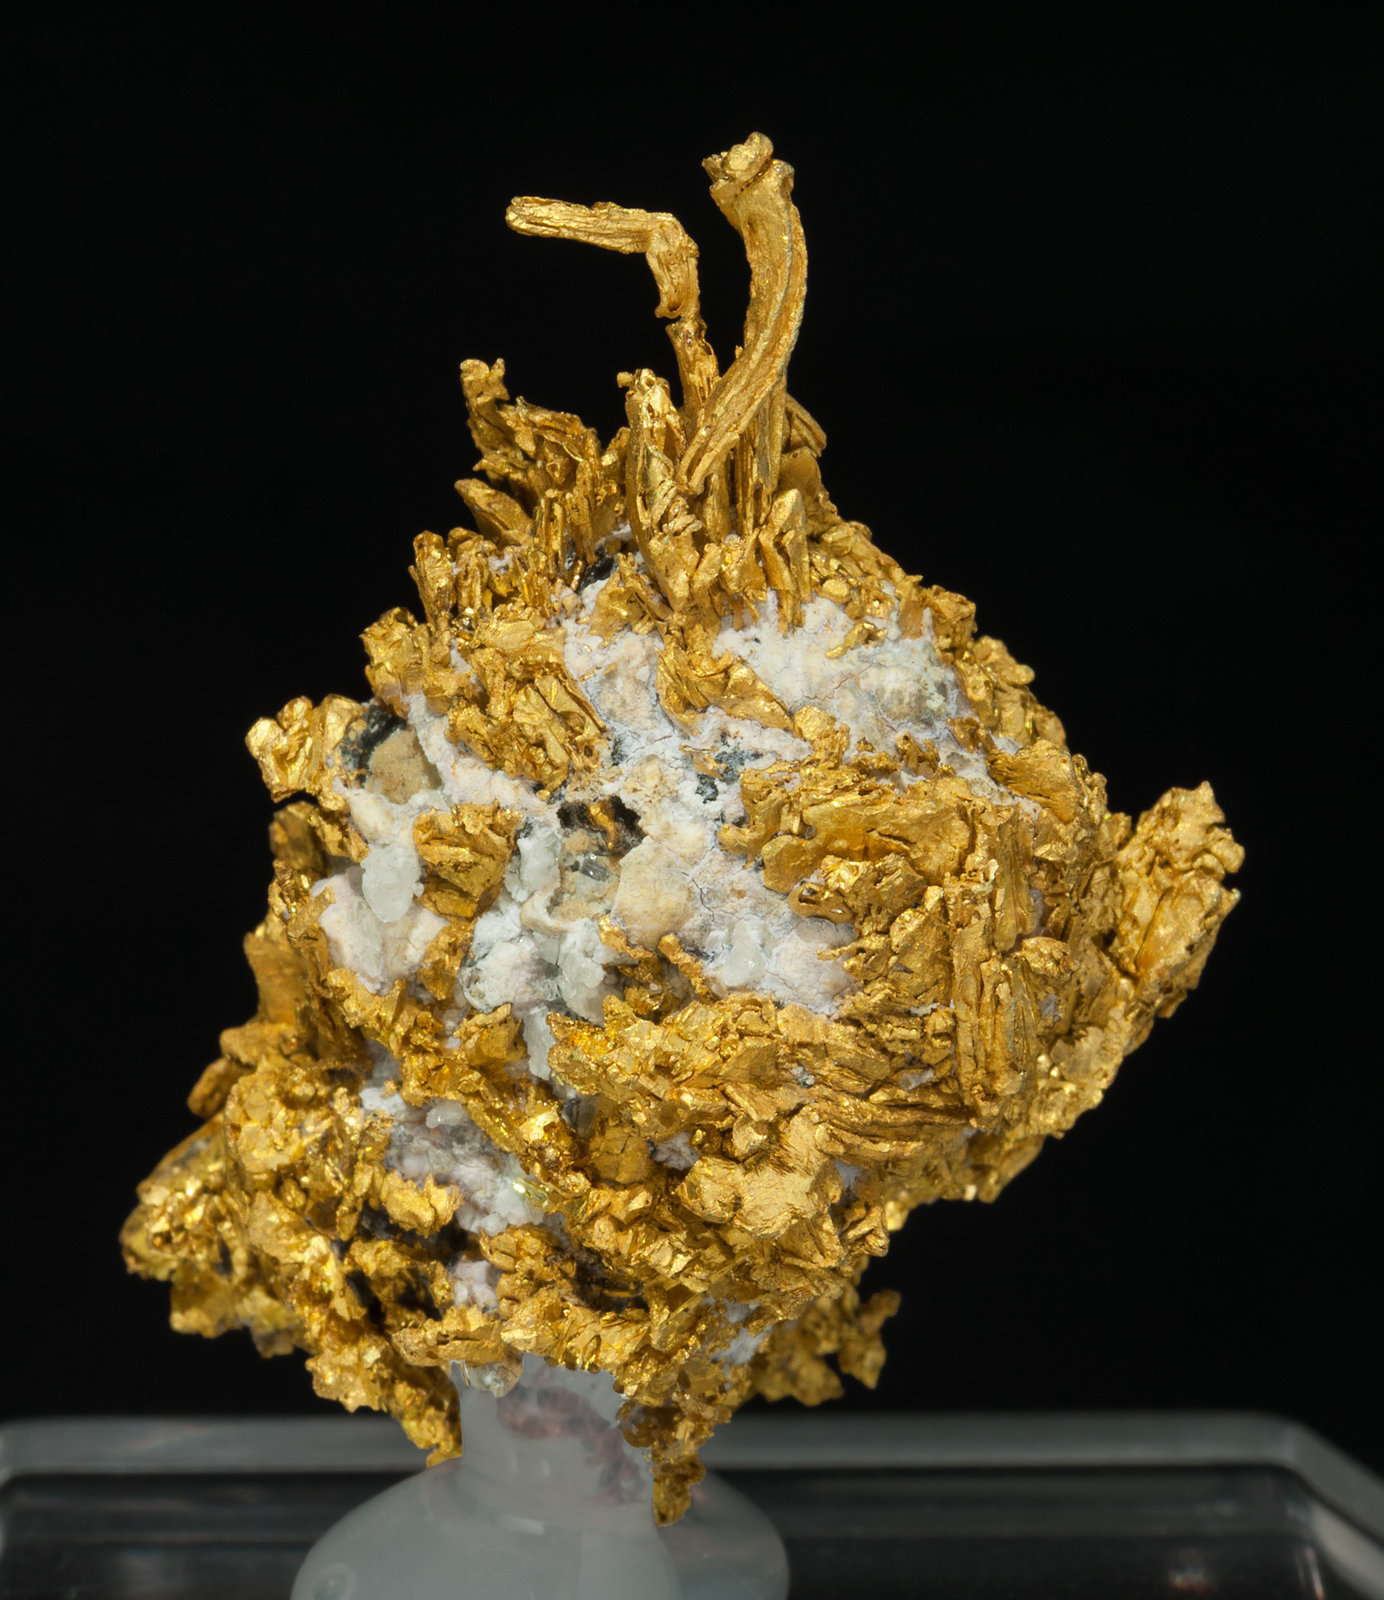 specimens/s_imagesZ3/Gold-TC56Z3r.jpg